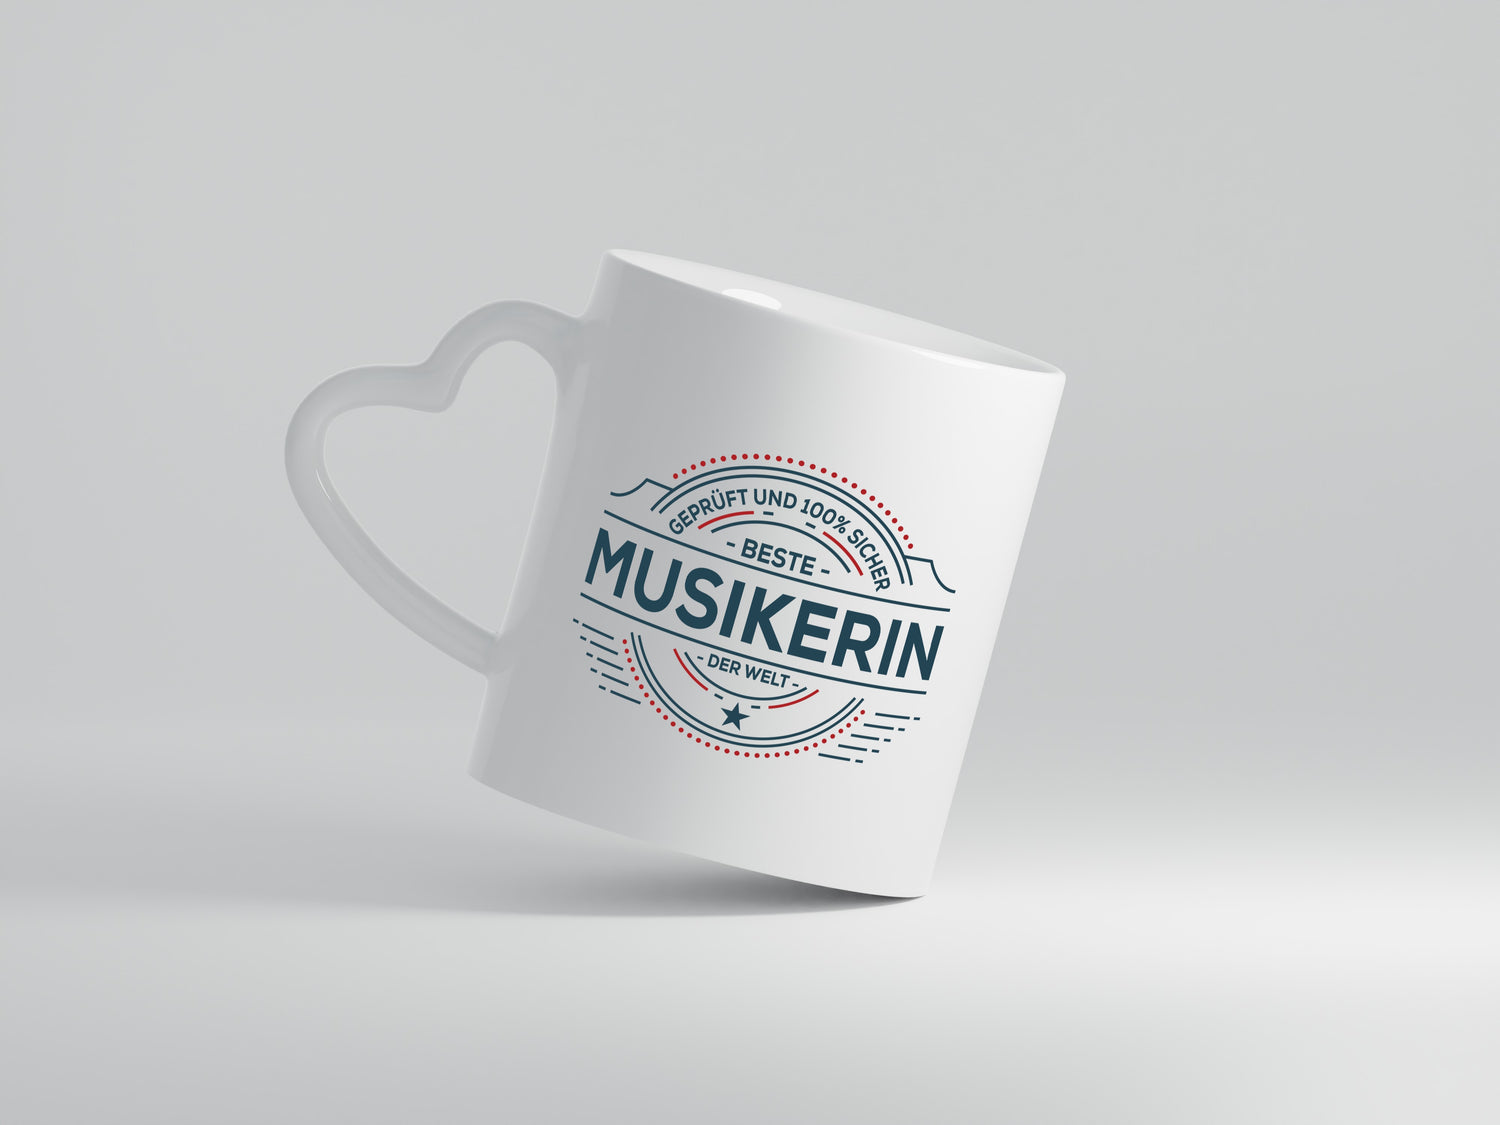 Geprüft und sicher: Musikerin | Musik | Musikantin - Herzhenkel Tasse - Kaffeetasse / Geschenk / Familie